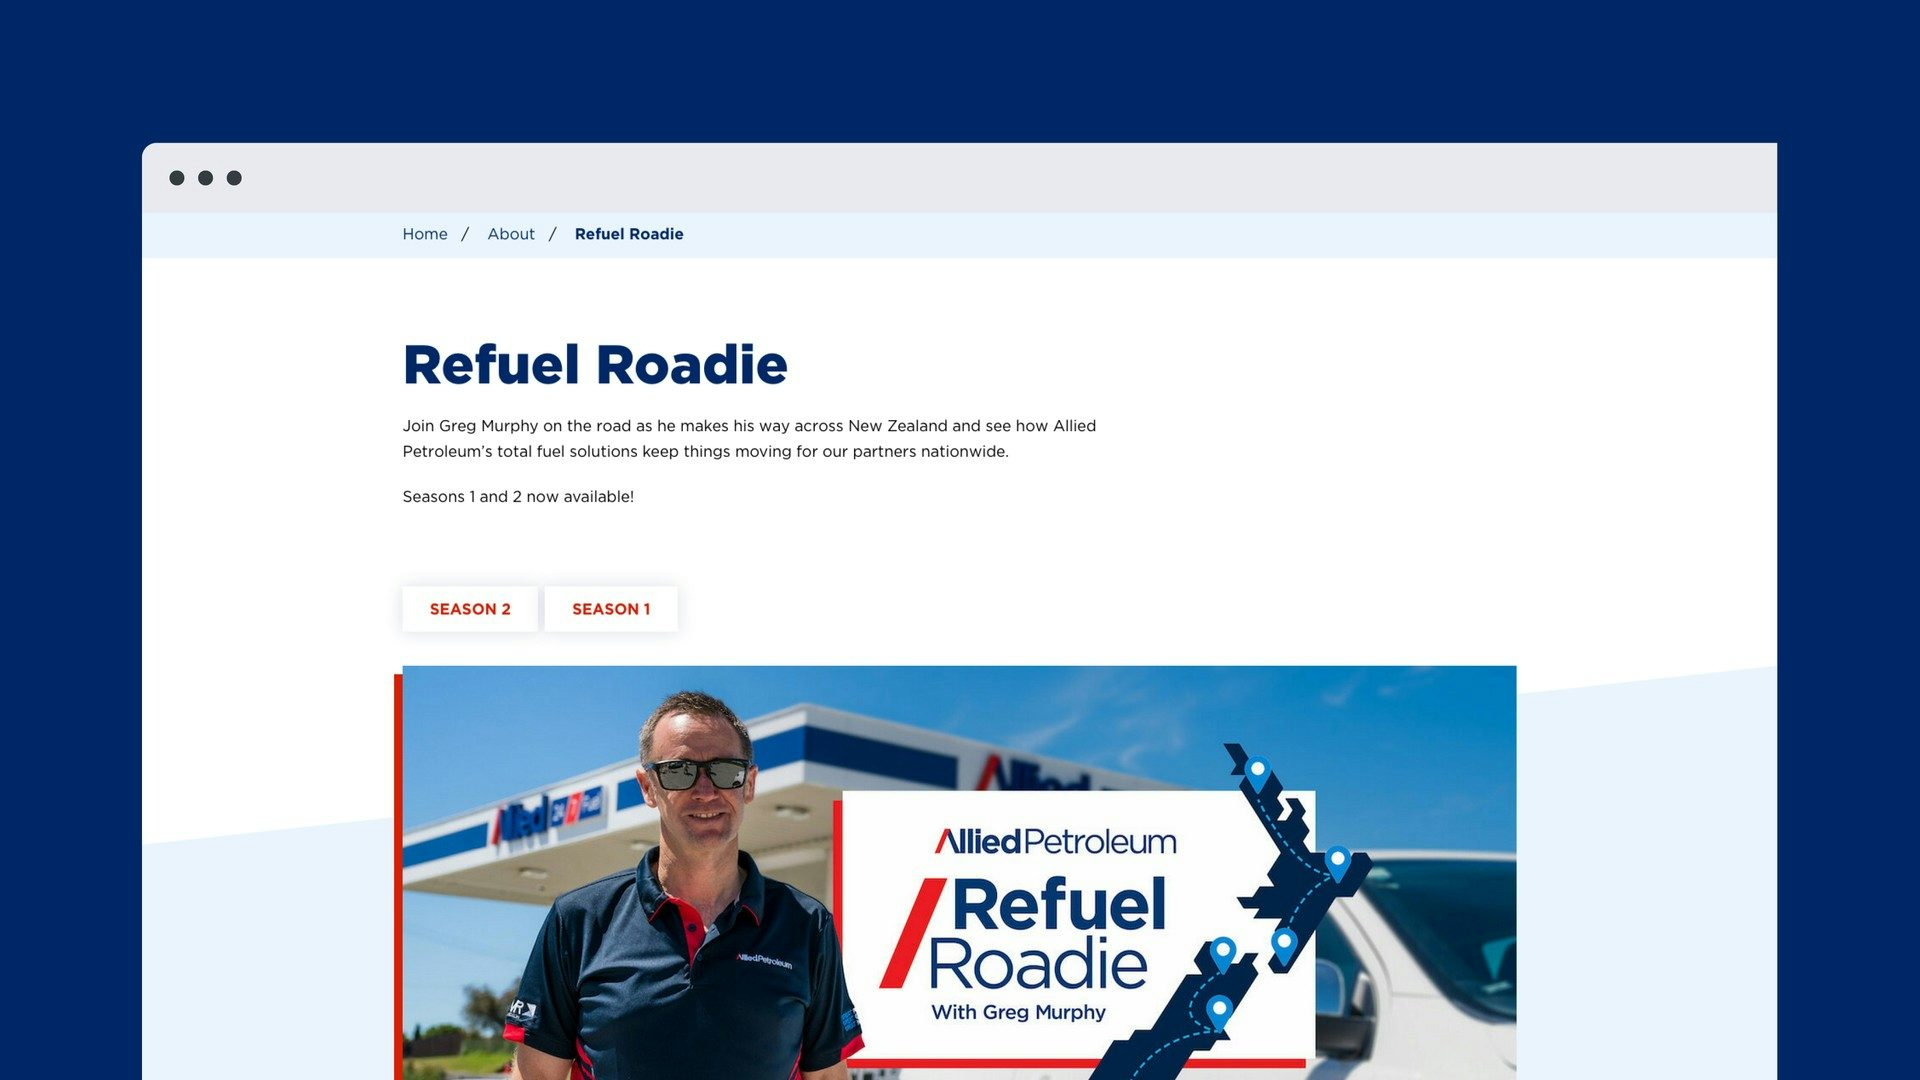 Allied Petroleum Refuel Roadie website visual